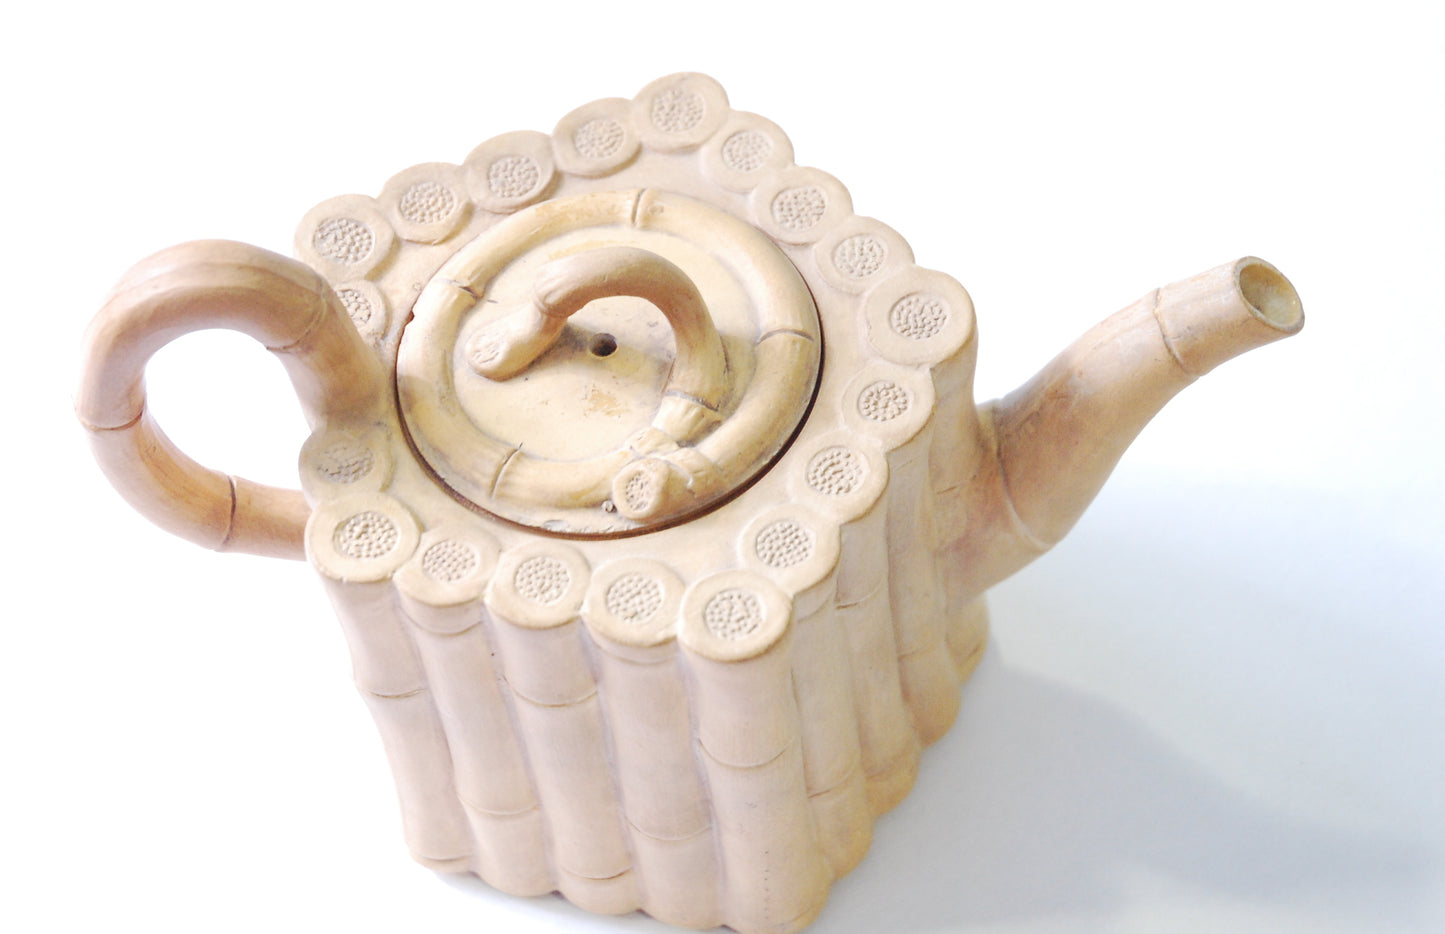 Teapot: Bamboo